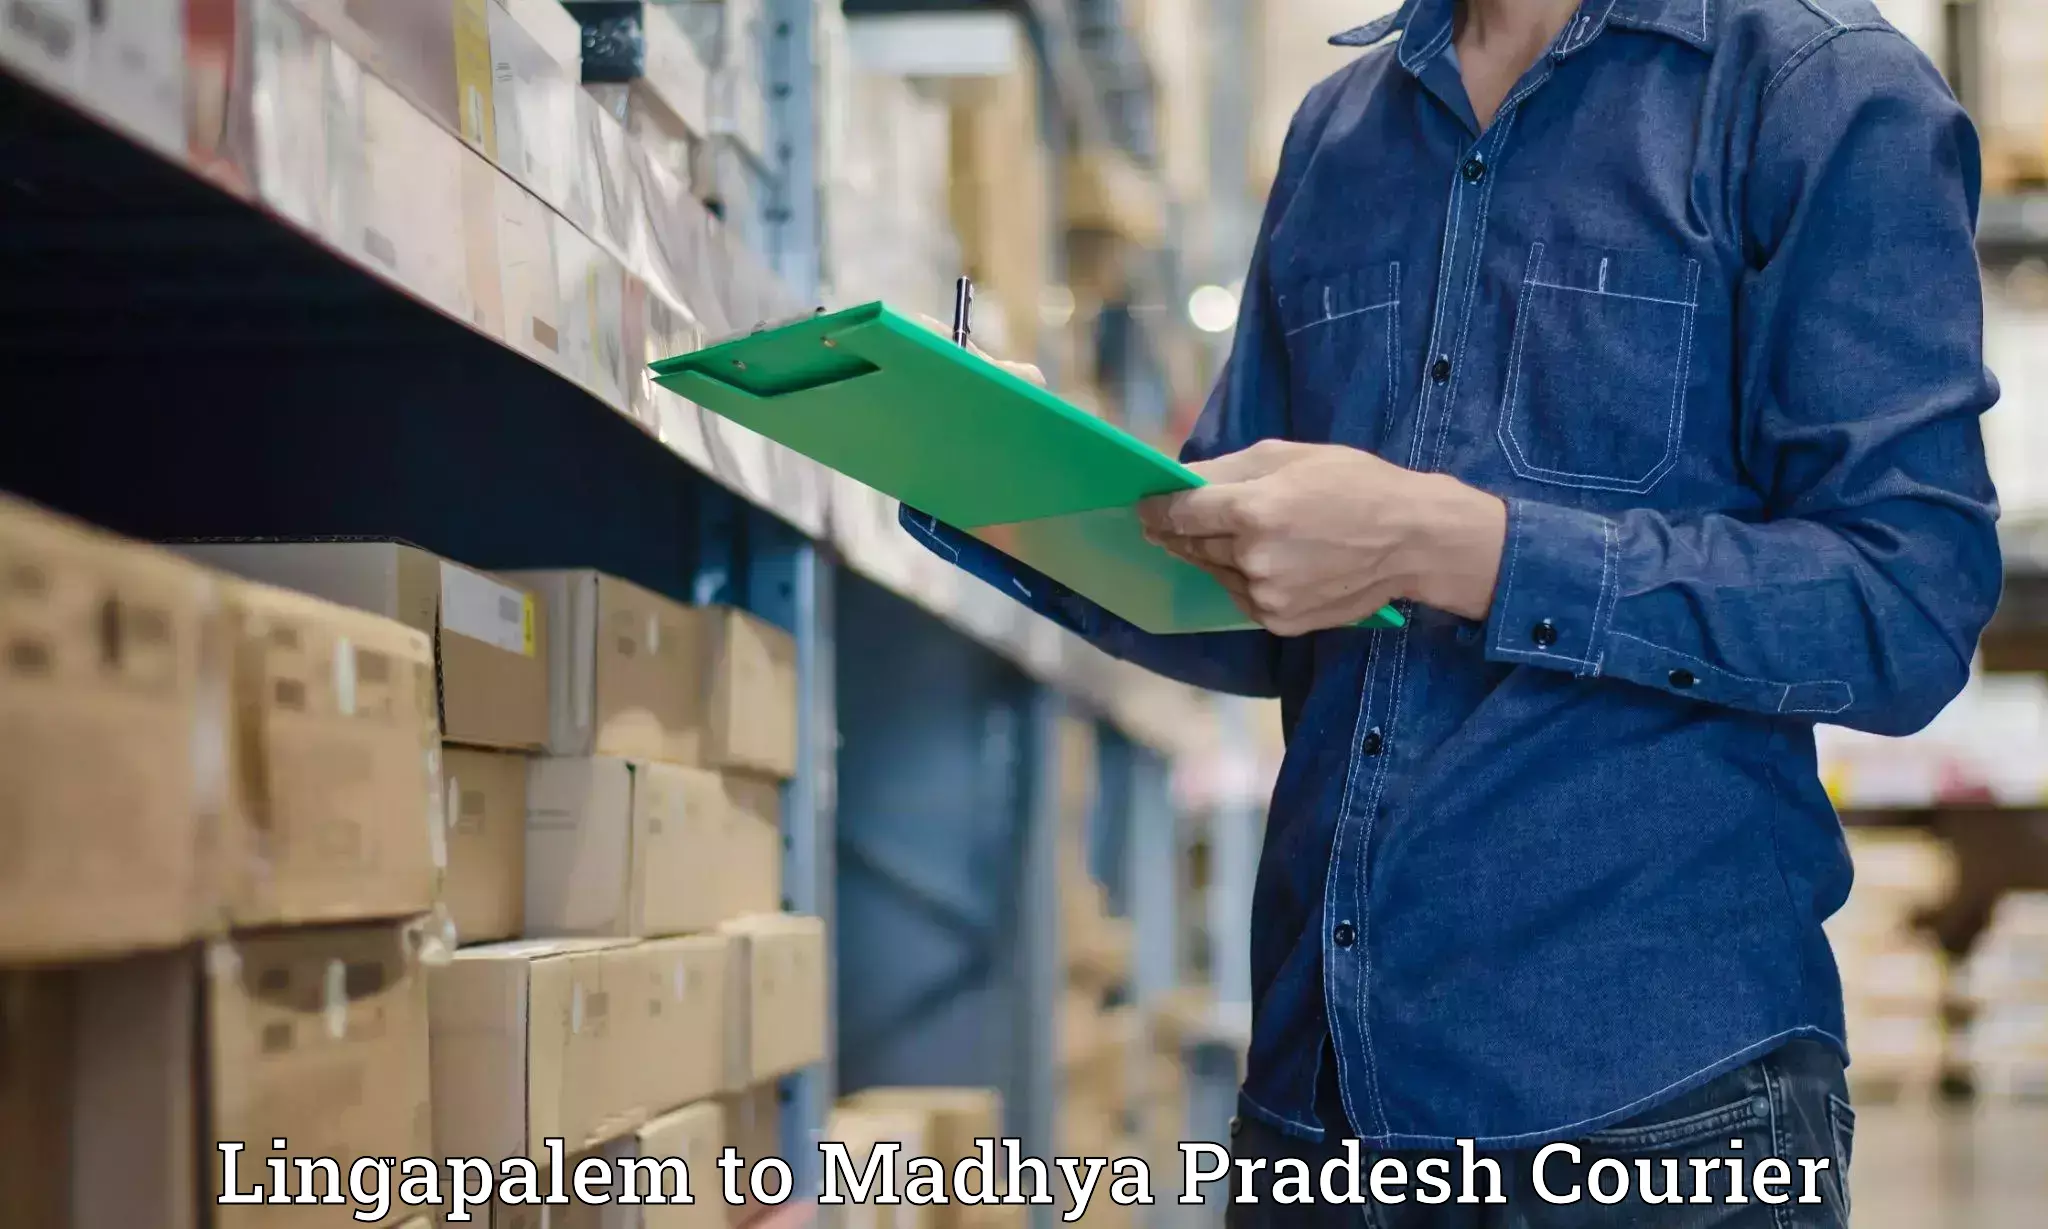 Professional courier handling Lingapalem to Begumganj